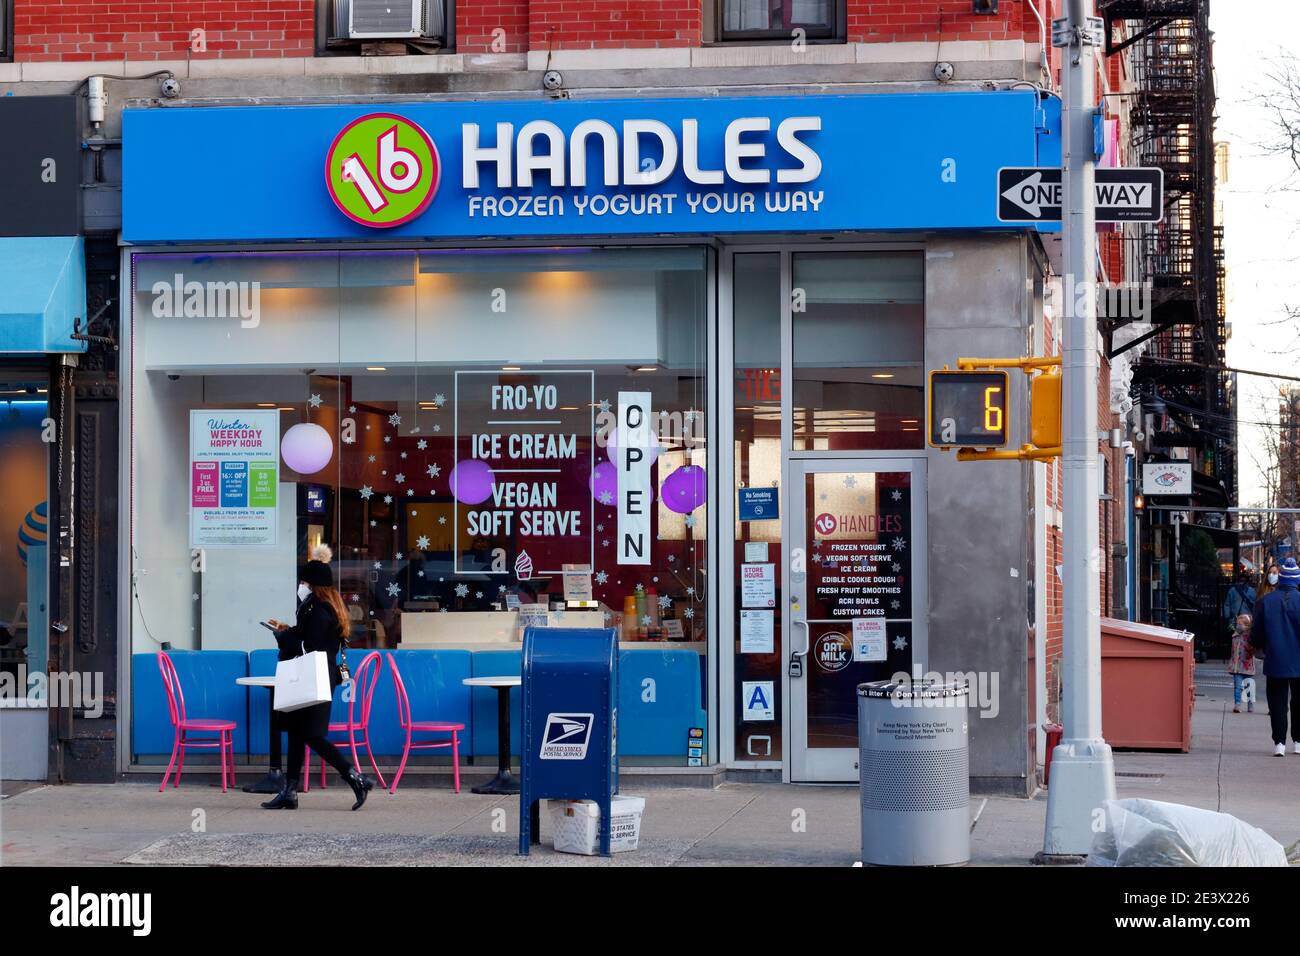 16 Handles, 178 8th Ave, New York, NYC boutique photo d'une boutique de yaourts glacés dans le quartier de Chelsea à Manhattan. Banque D'Images